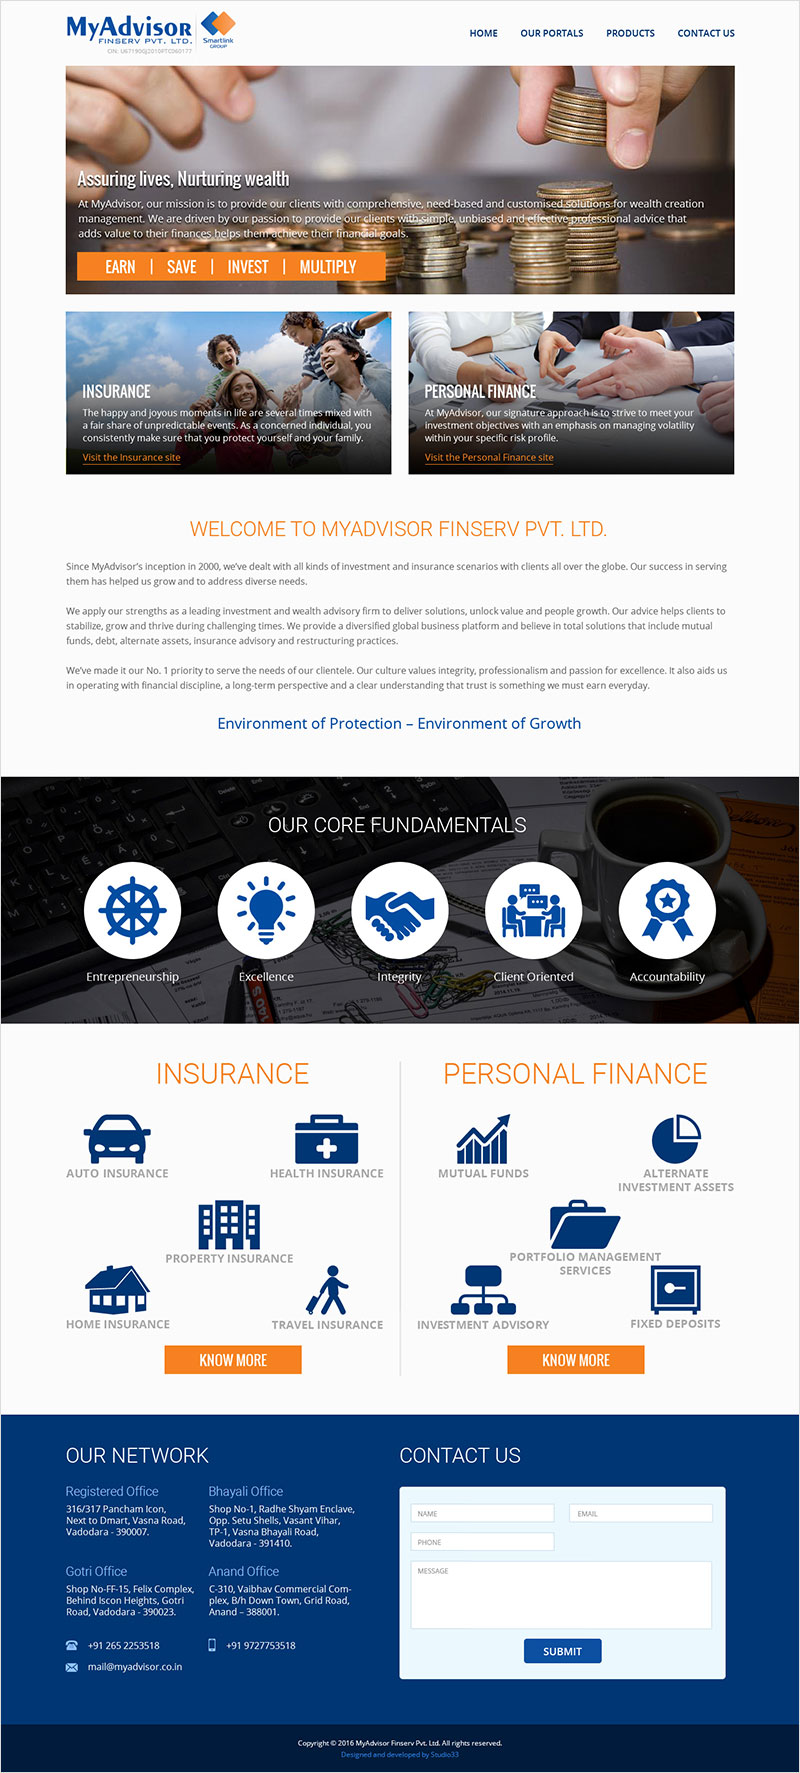 MyAdvisor FinServ Pvt. Ltd. - Website Design